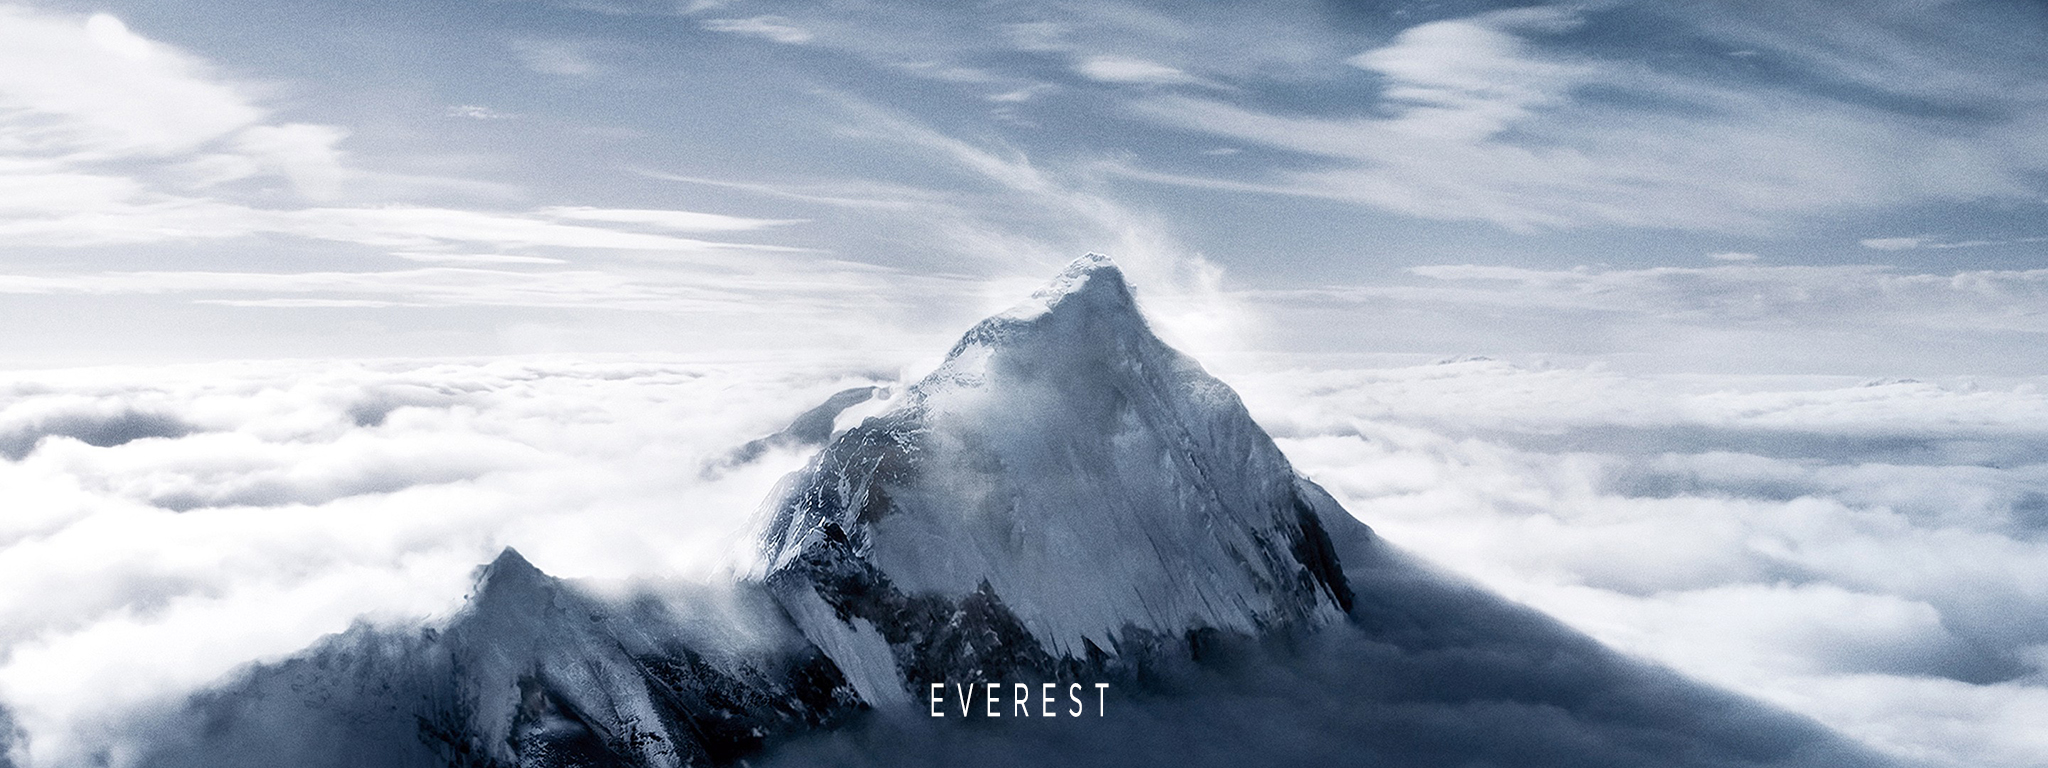 Everest VR: Leo núi Everest nhờ công nghệ thực tế ảo